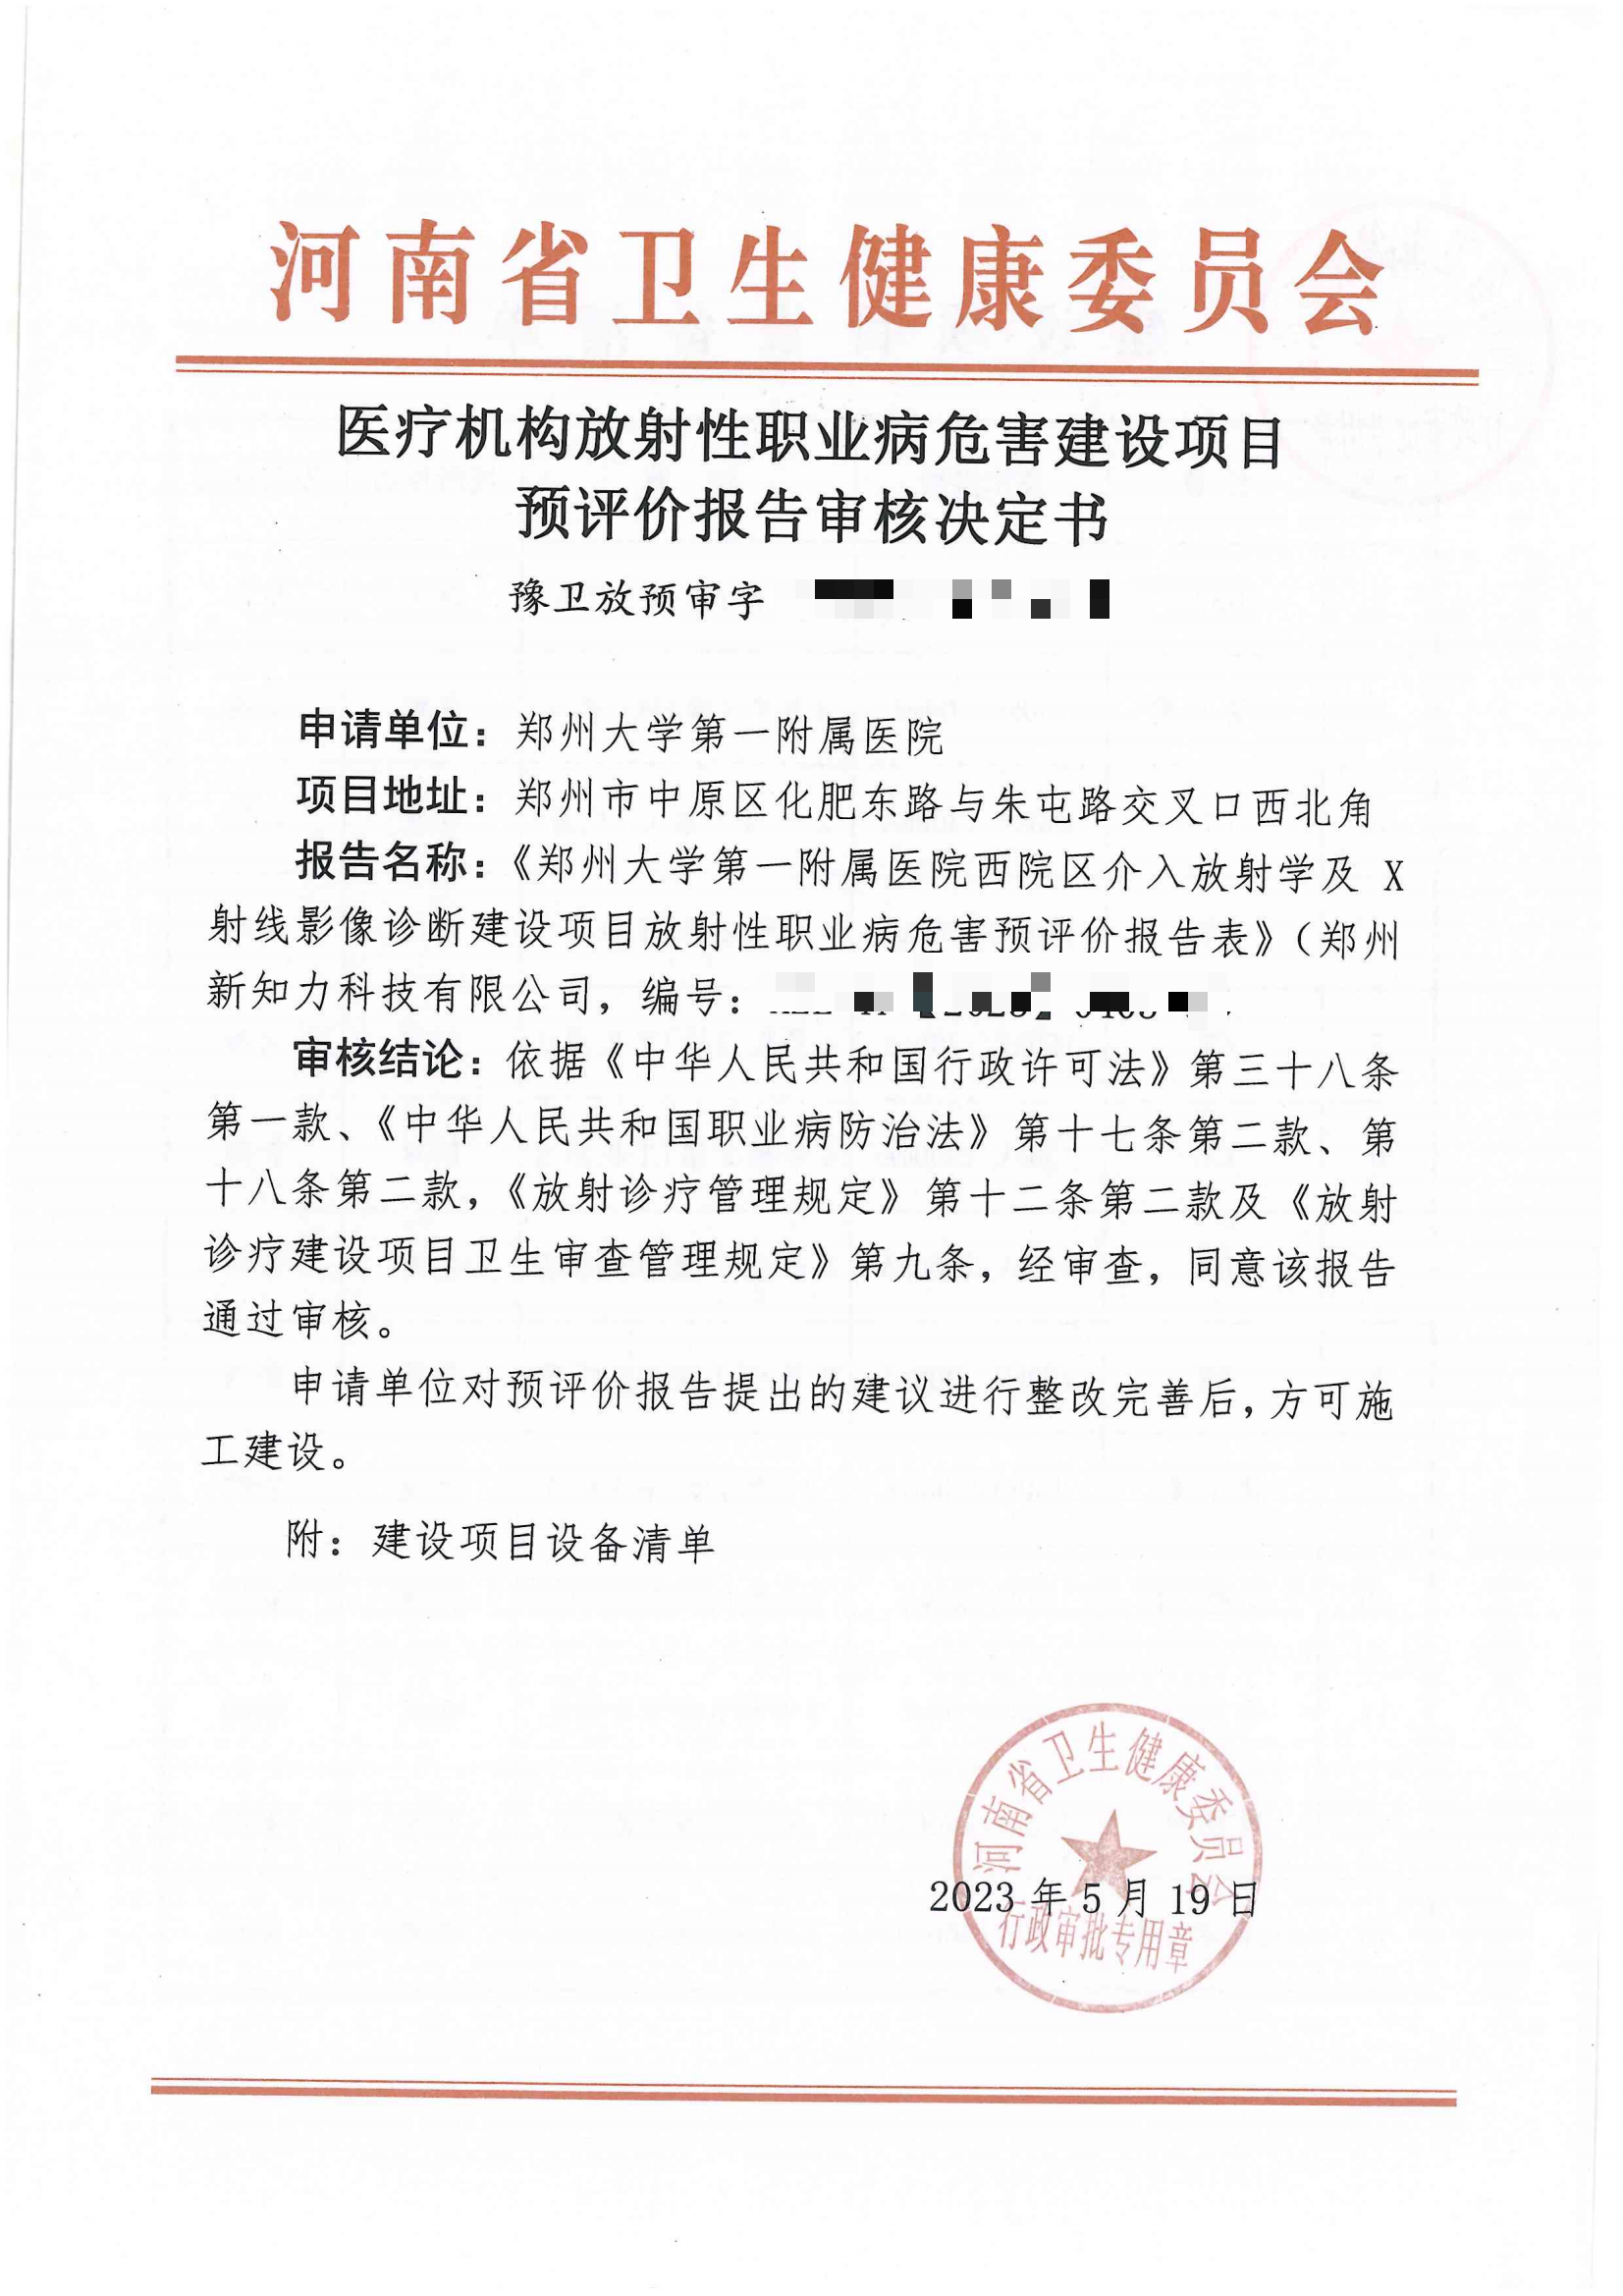 郑州大学第一附属医院西院区预评审核决定书